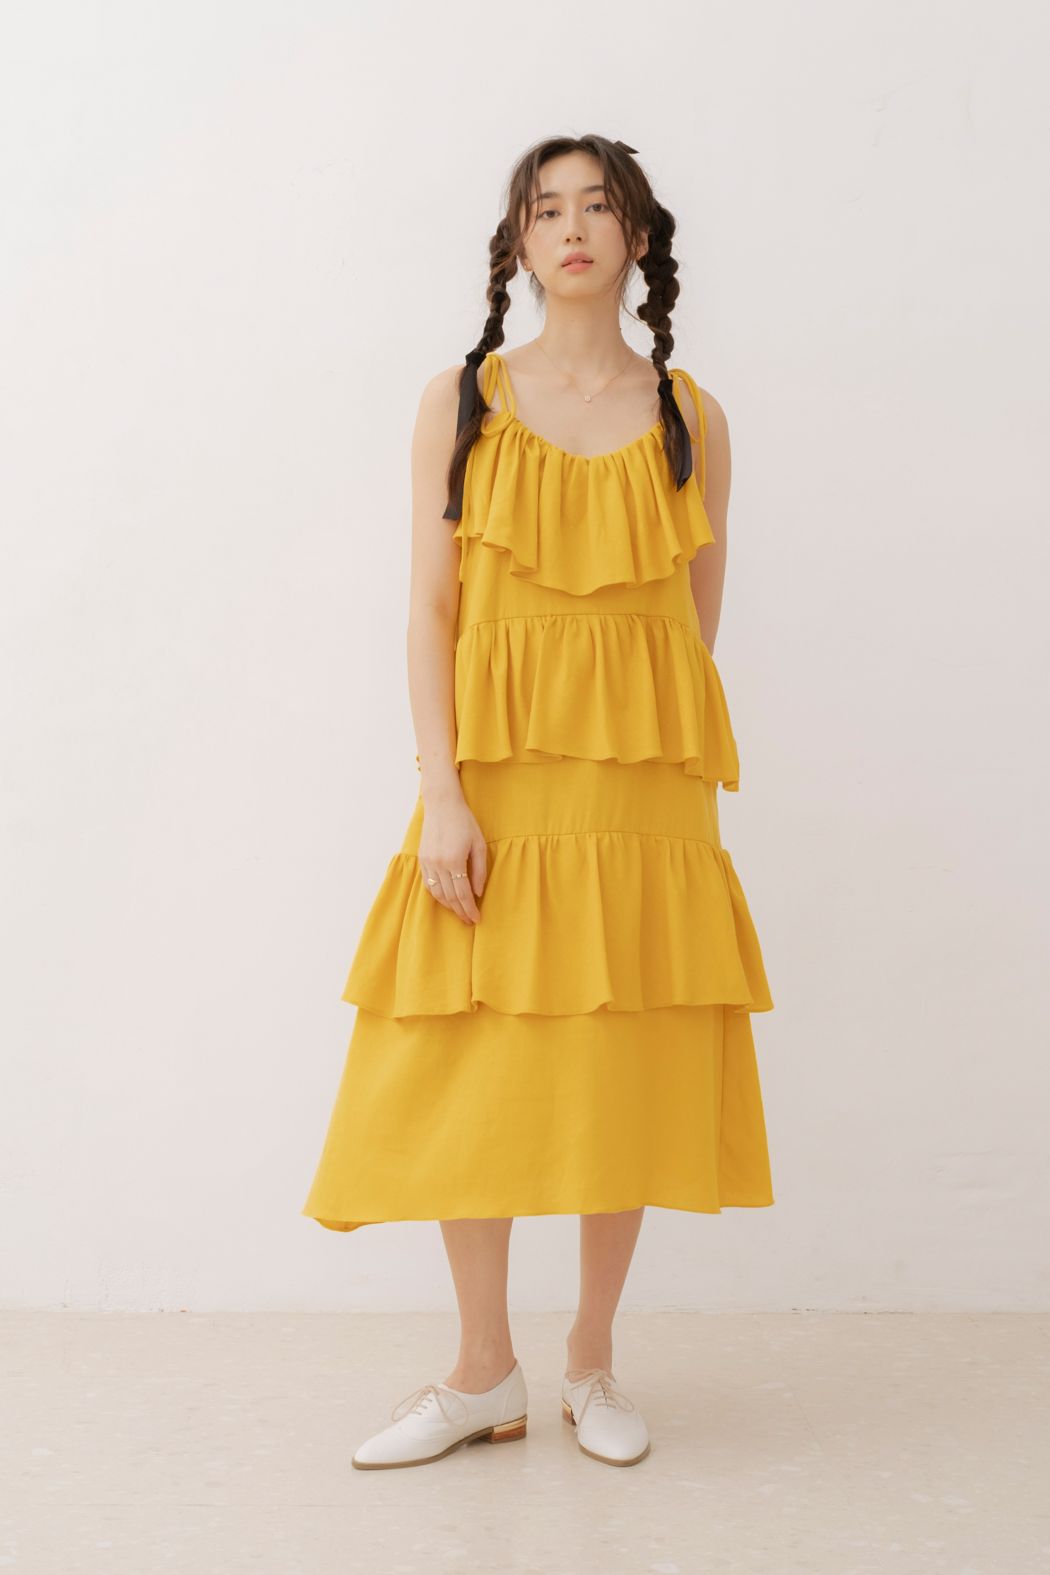 Laya Dress in Yellow (40% Off)